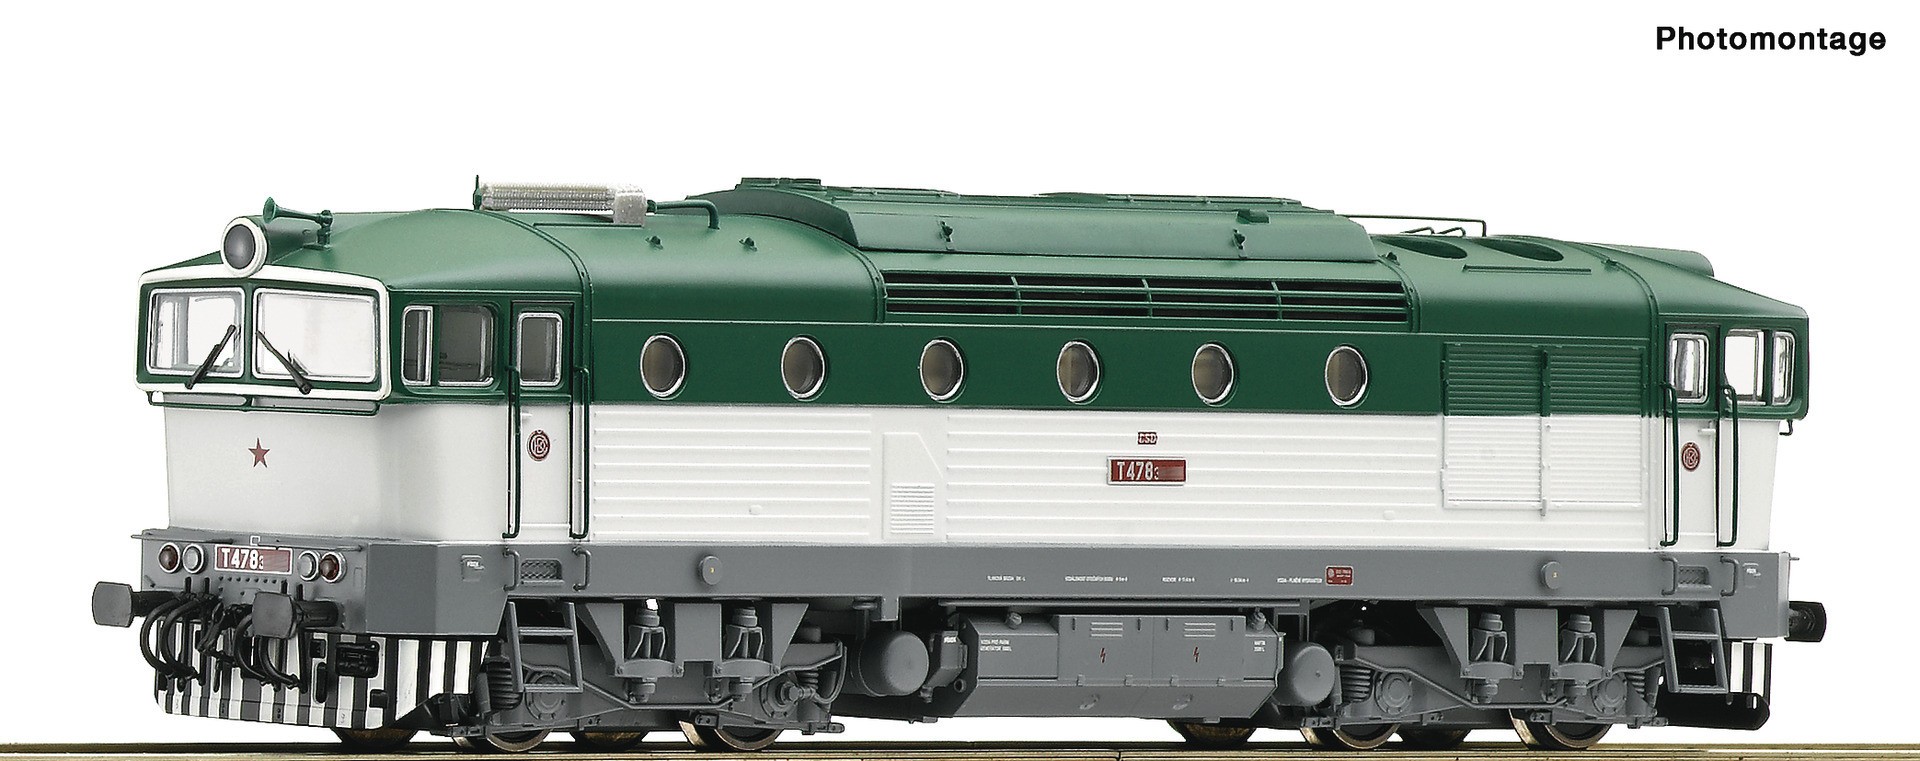  Roco-Fleischmann Roco-Fleischmann 72051-H0 - Trains miniatures : loco